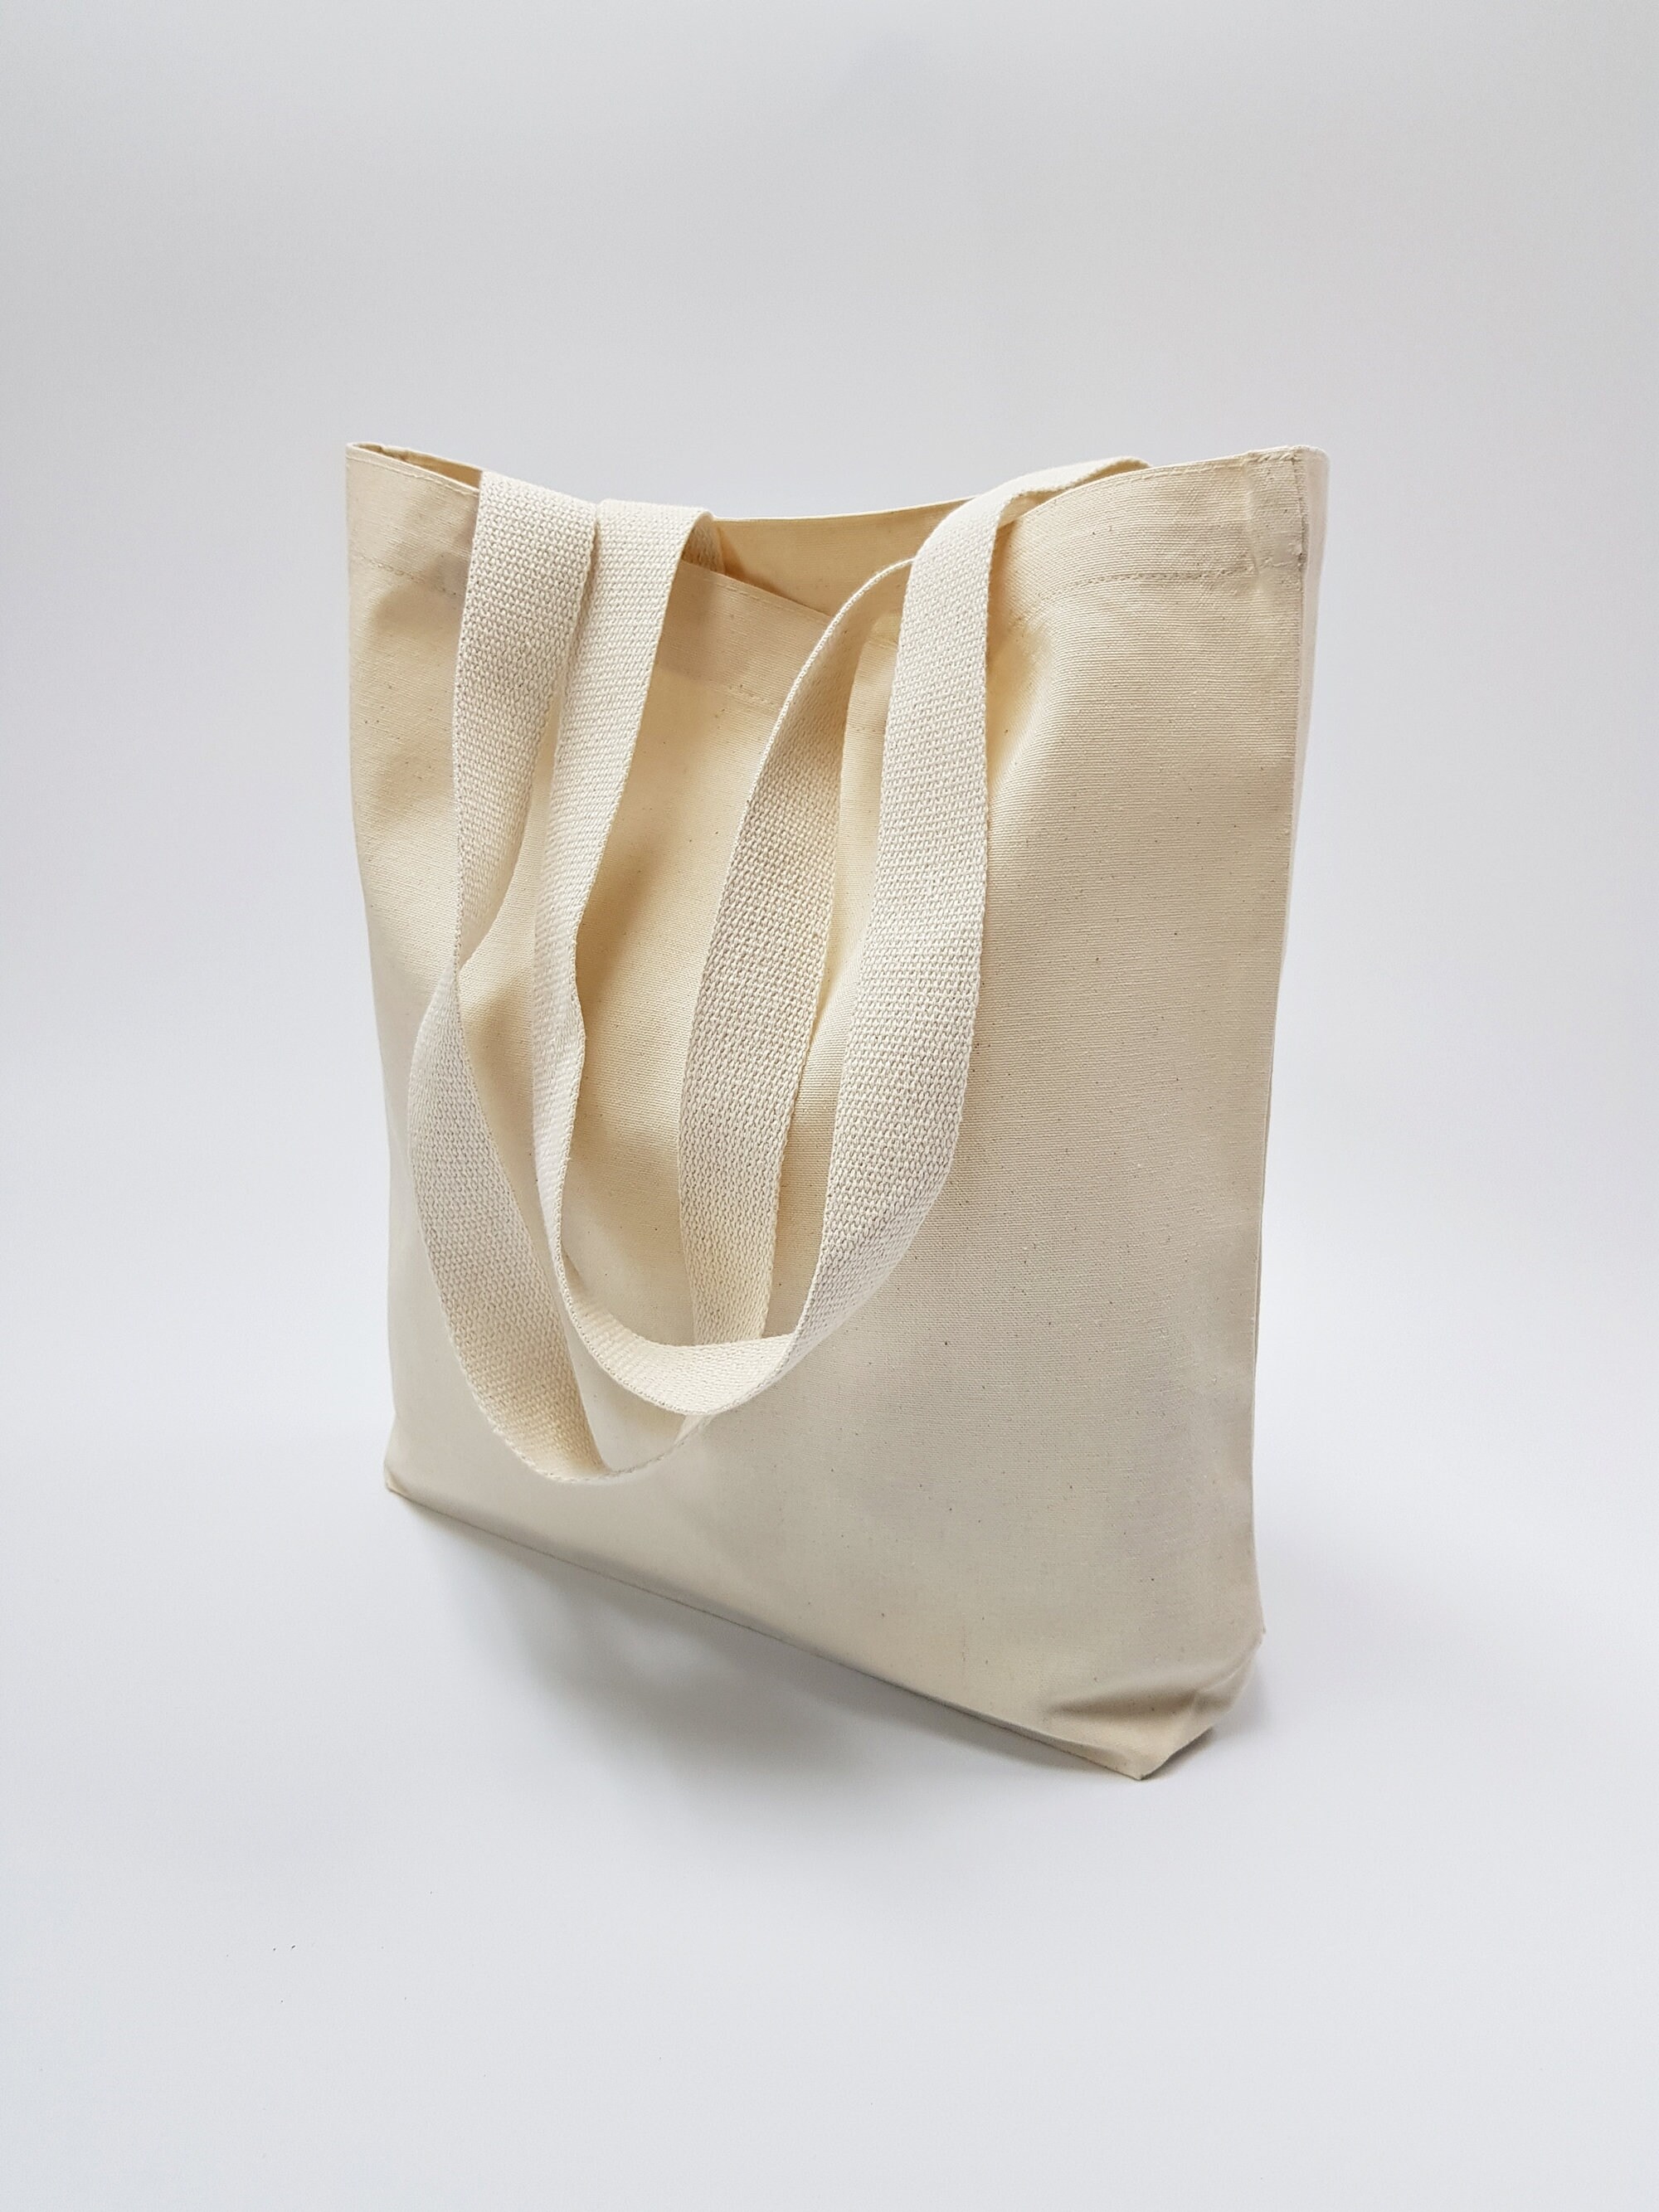 14 15.5 Plain Unbleached Cotton Canvas Tote Bag, Market Bag, Fitness Bag,  Eco Friendly Cotton Fabric Style103 